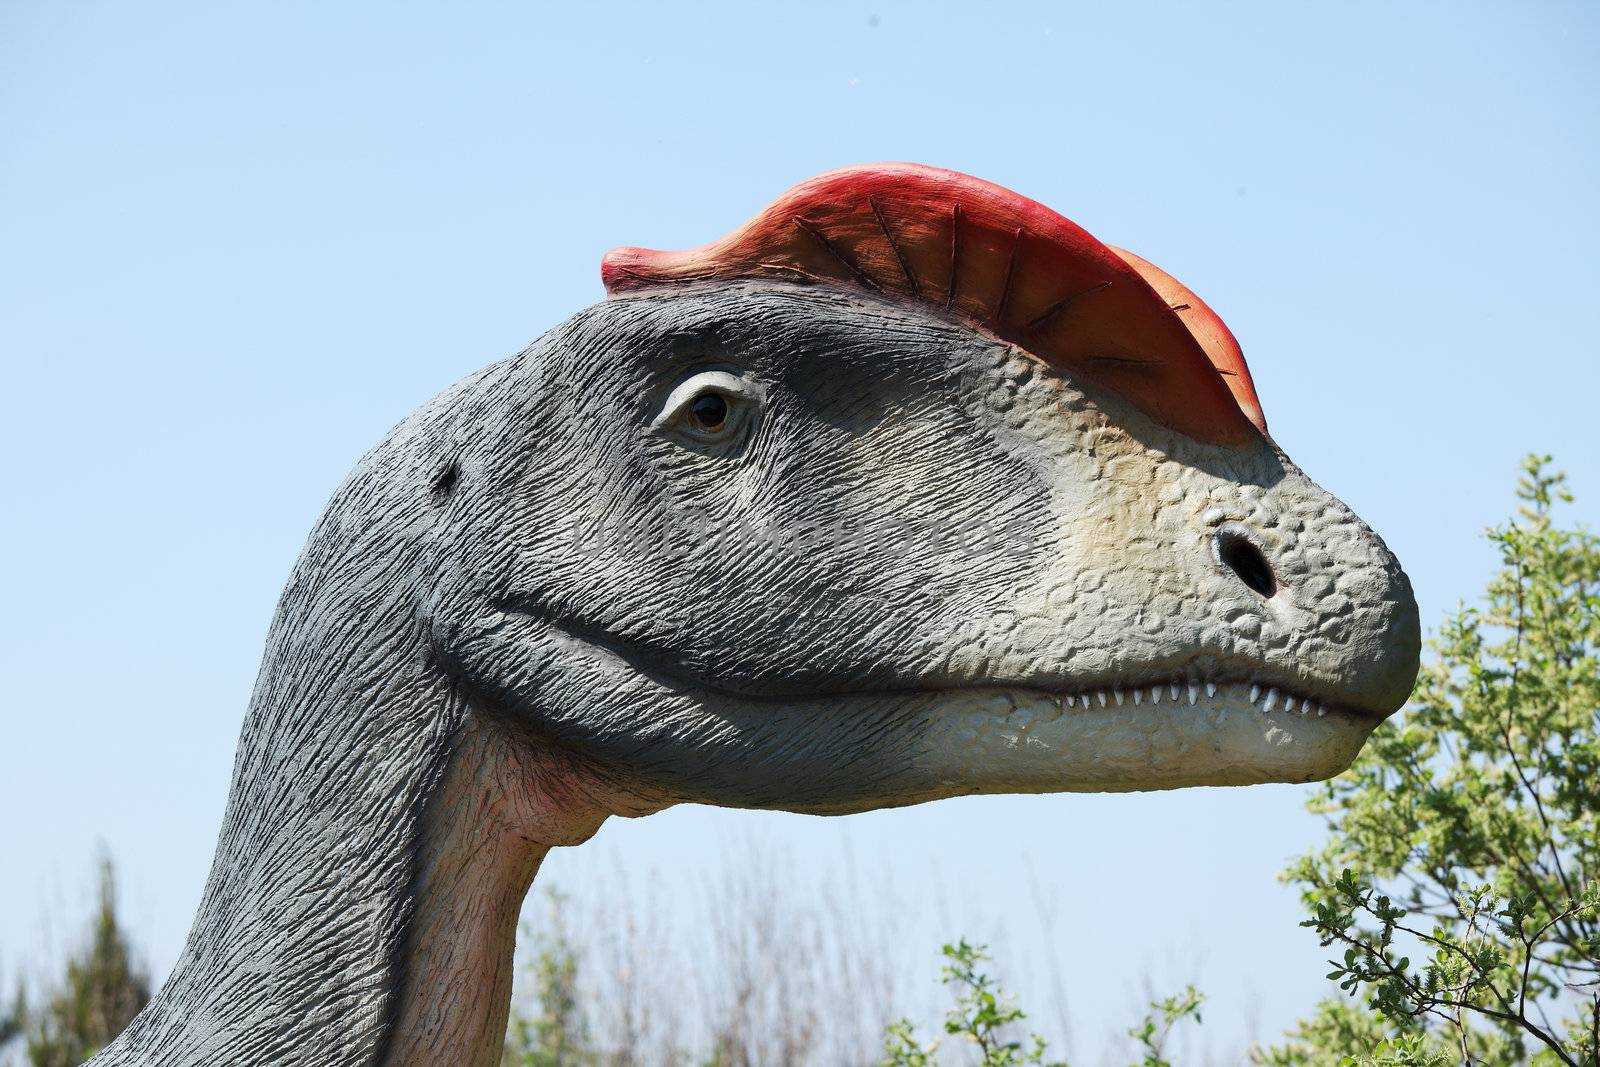 Dinosaur - Dilophosaurus head against blue sky